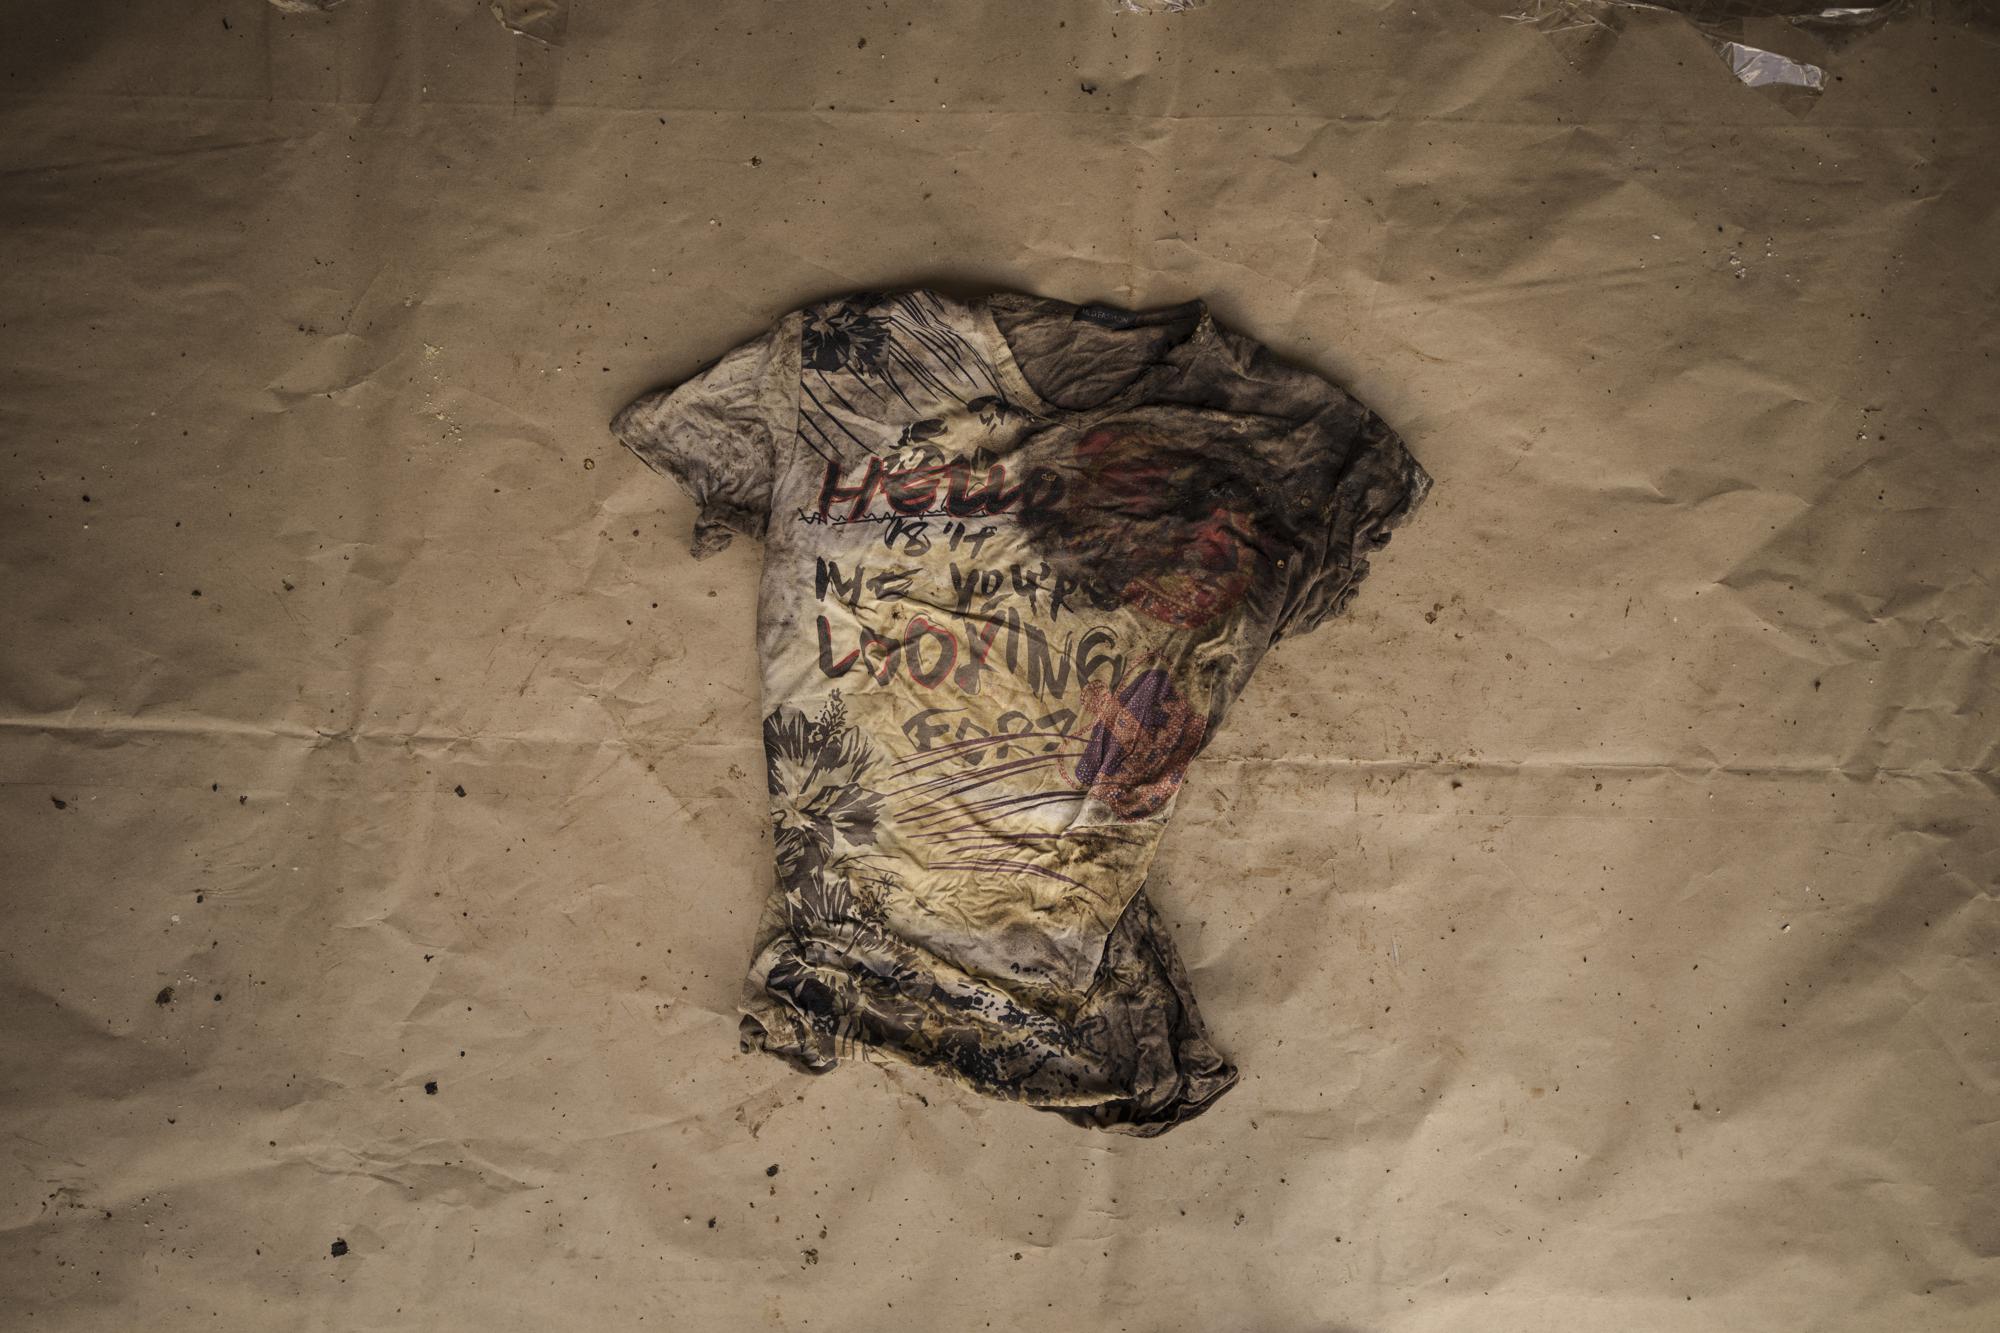 Una camiseta estampada con la frase “Hola, ¿es a mi a quién buscas?”, que llevaba uno de los migrantes muertos que aparecieron en una embarcación mauritana a la deriva el 28 de mayo de 2021, es expuesta en la comisaría de policía de Scarborough, en la isla de Tobago, en Trinidad y Tobago, el 21 de enero de 2022. (AP Foto/Felipe Dana)